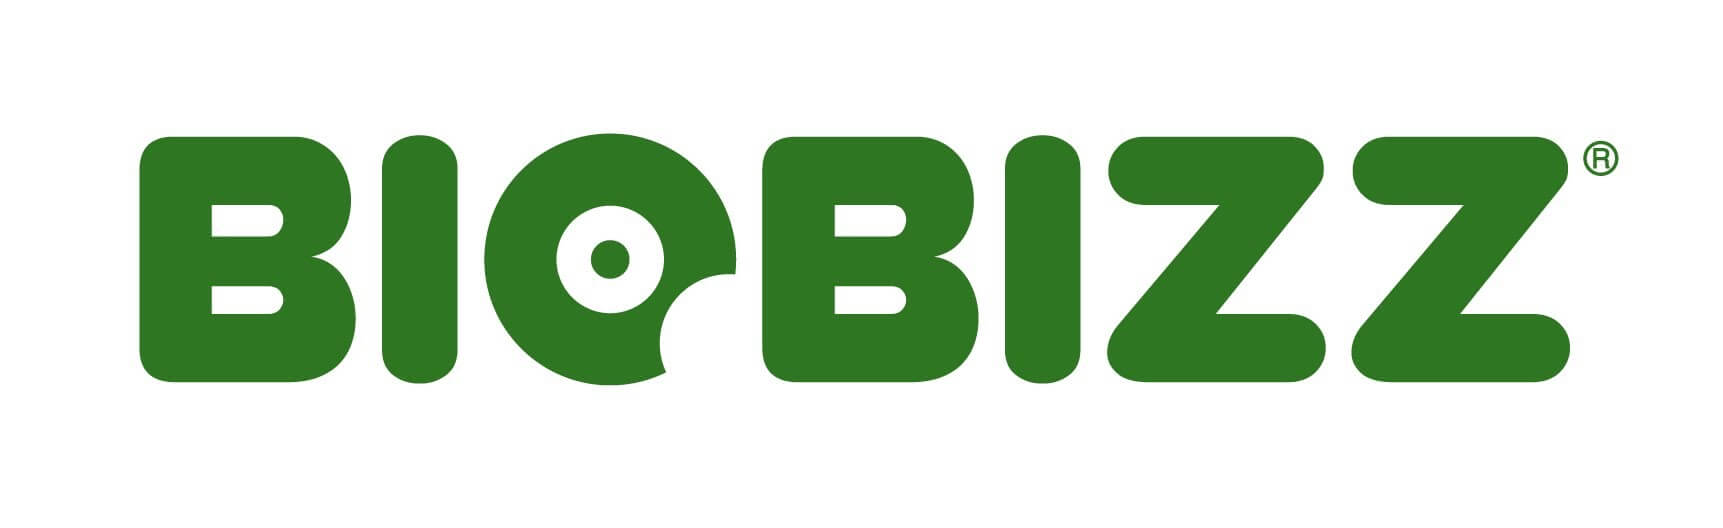 Biobizz - Ostalo